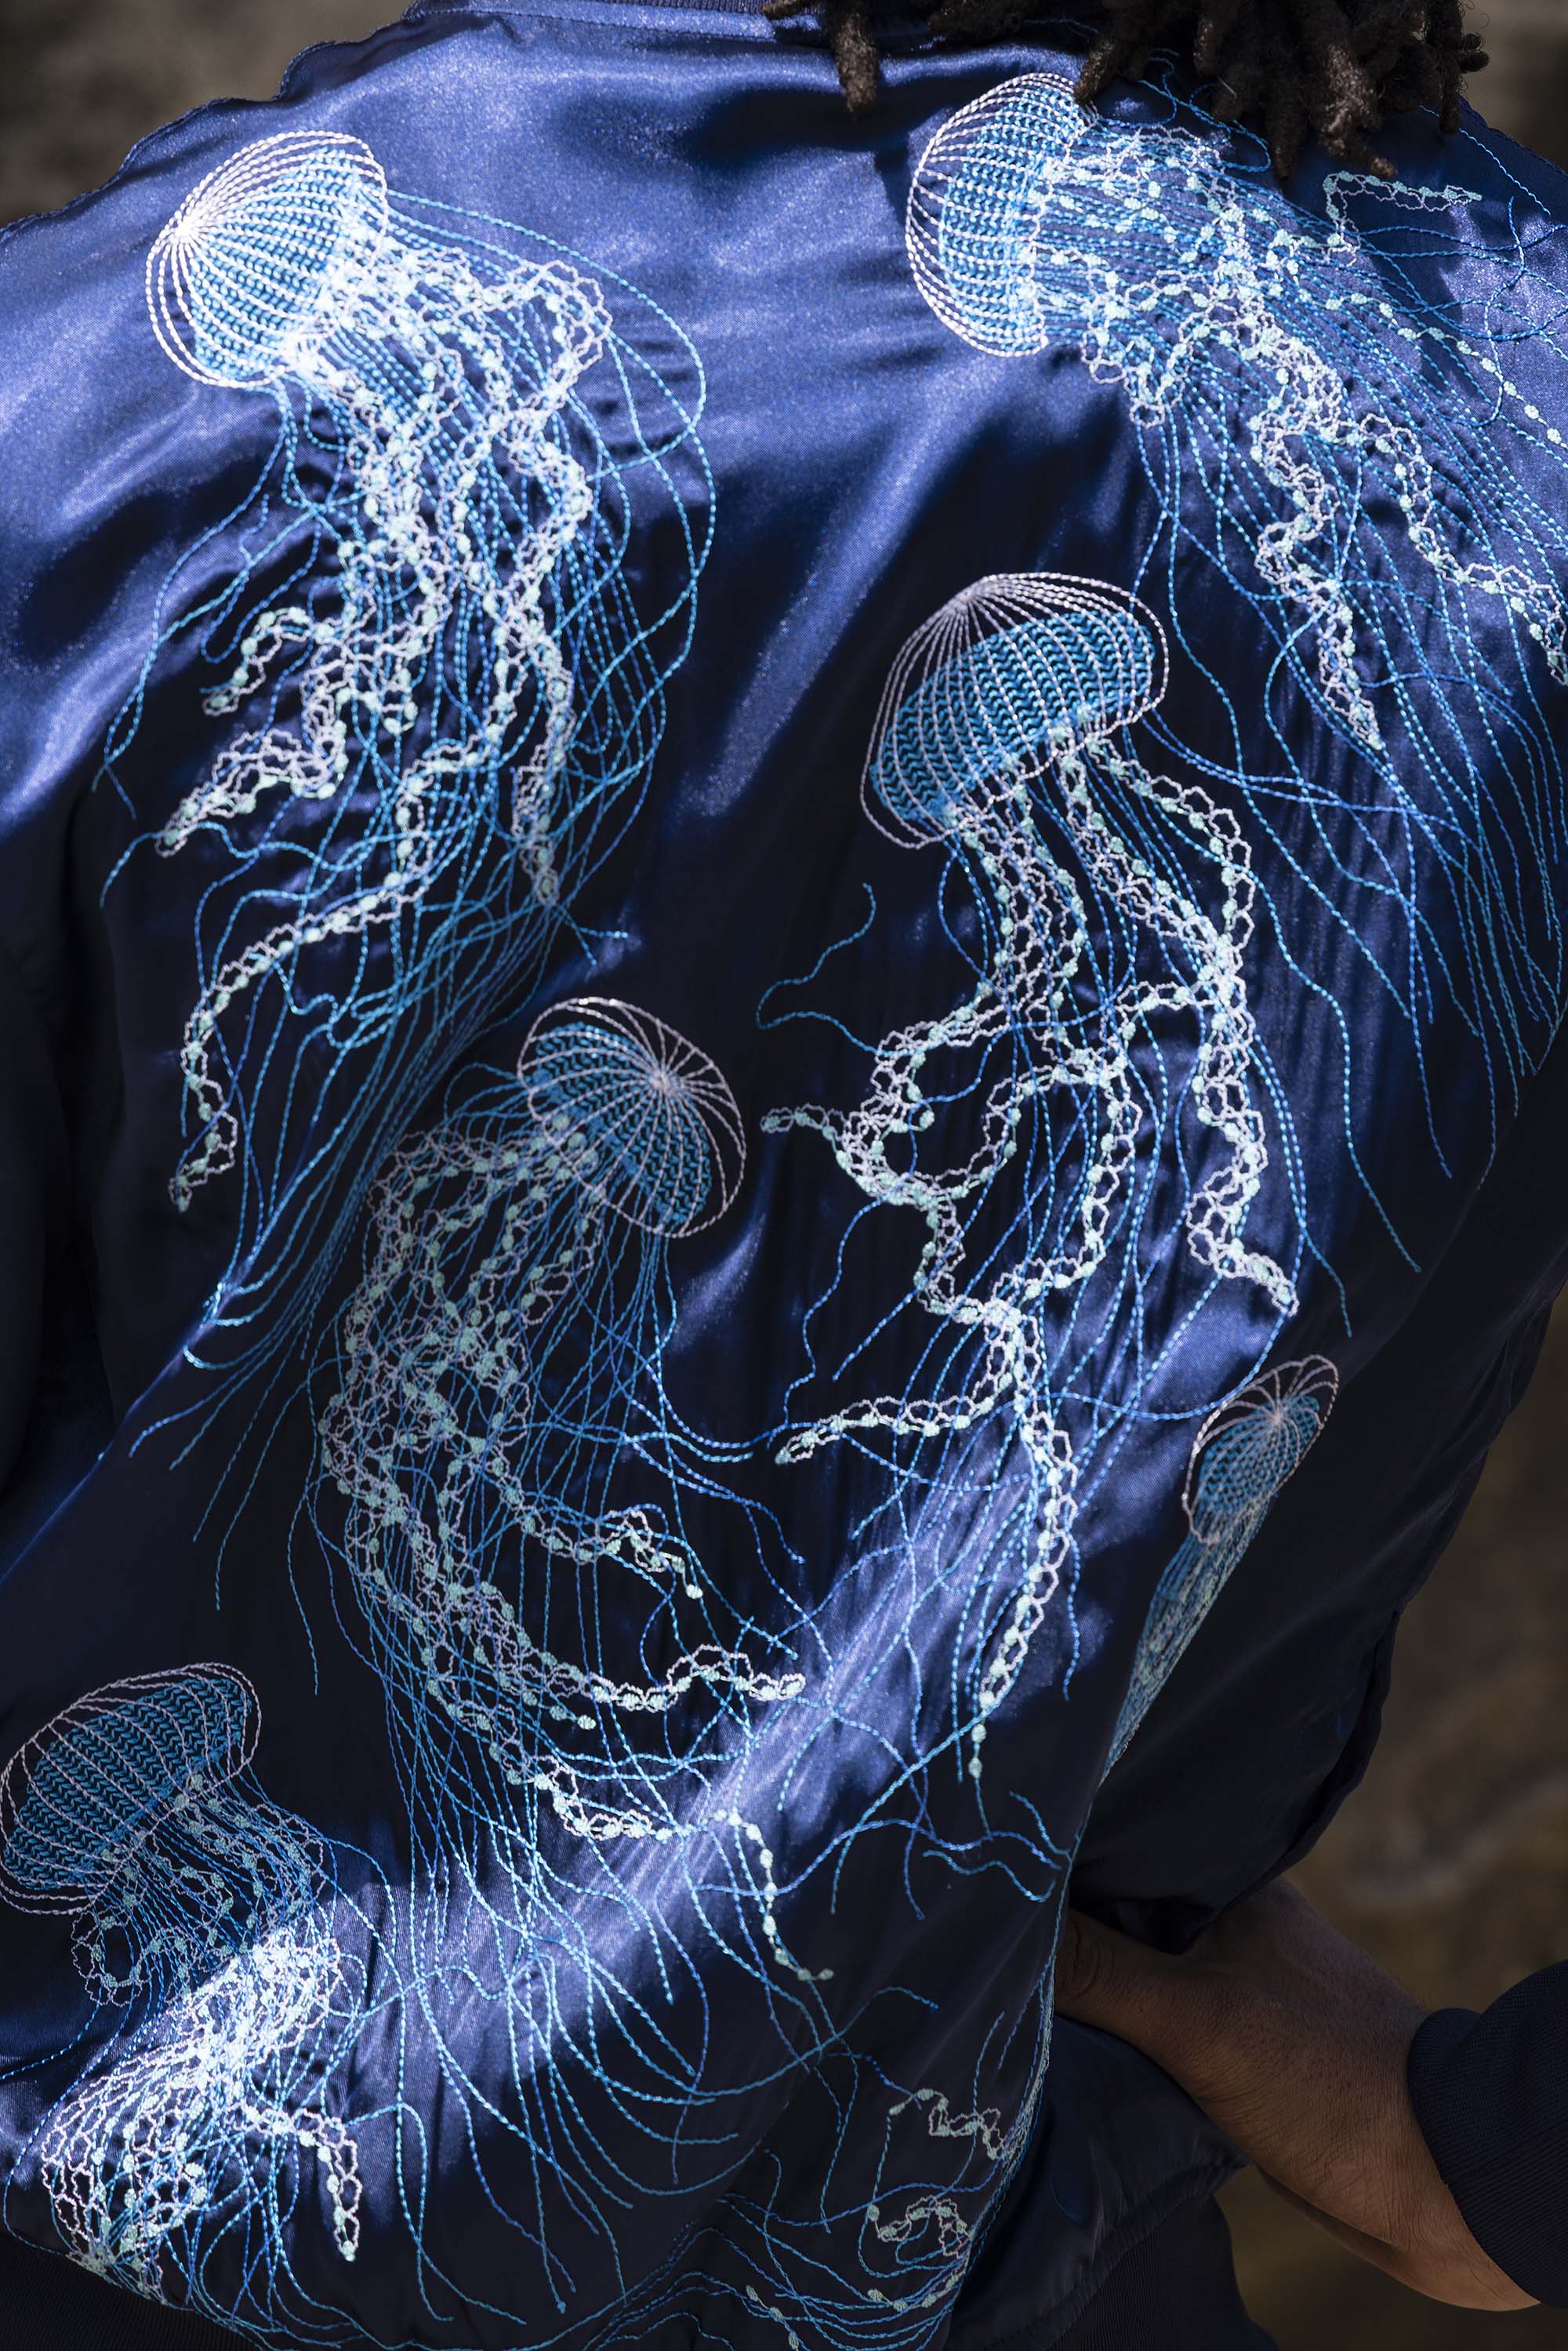 Blouson Paraguas Medusas Bleu Marine veste de sport Misericordia pour apporter autant originalité qu'élégance